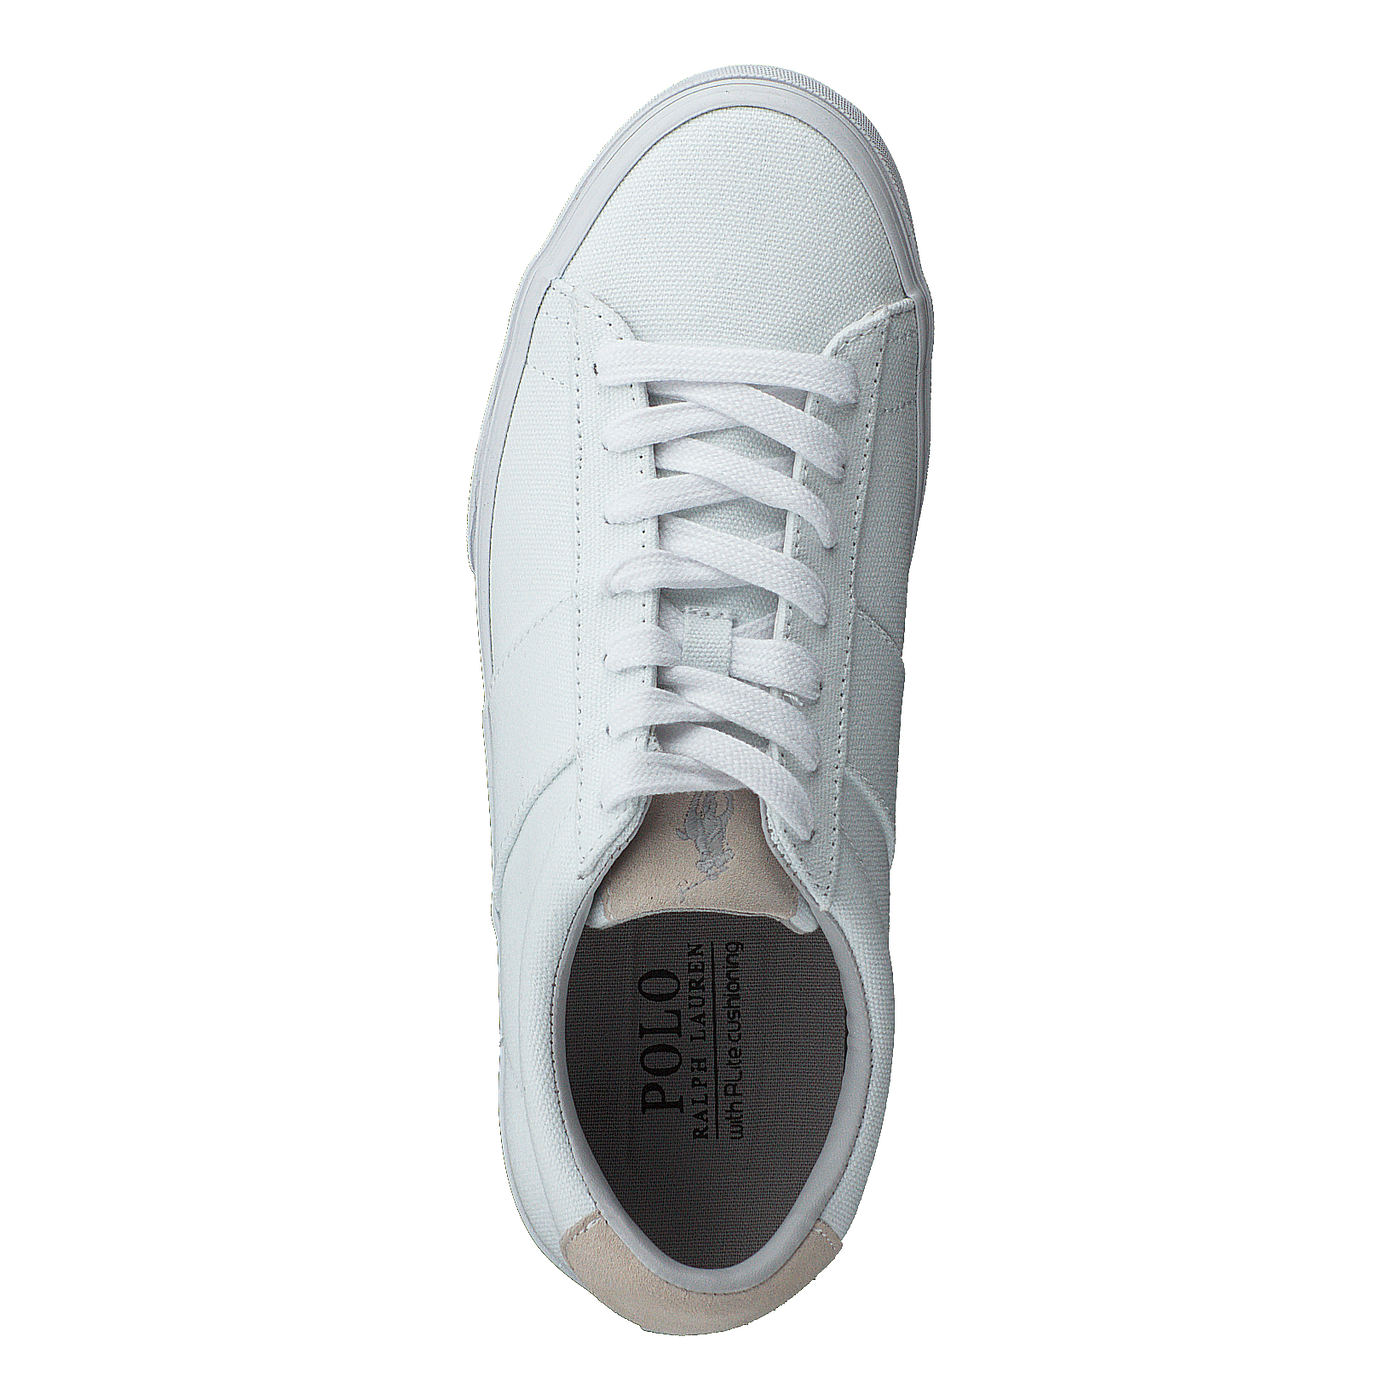 Sayer-sneakers-vulc Bright White